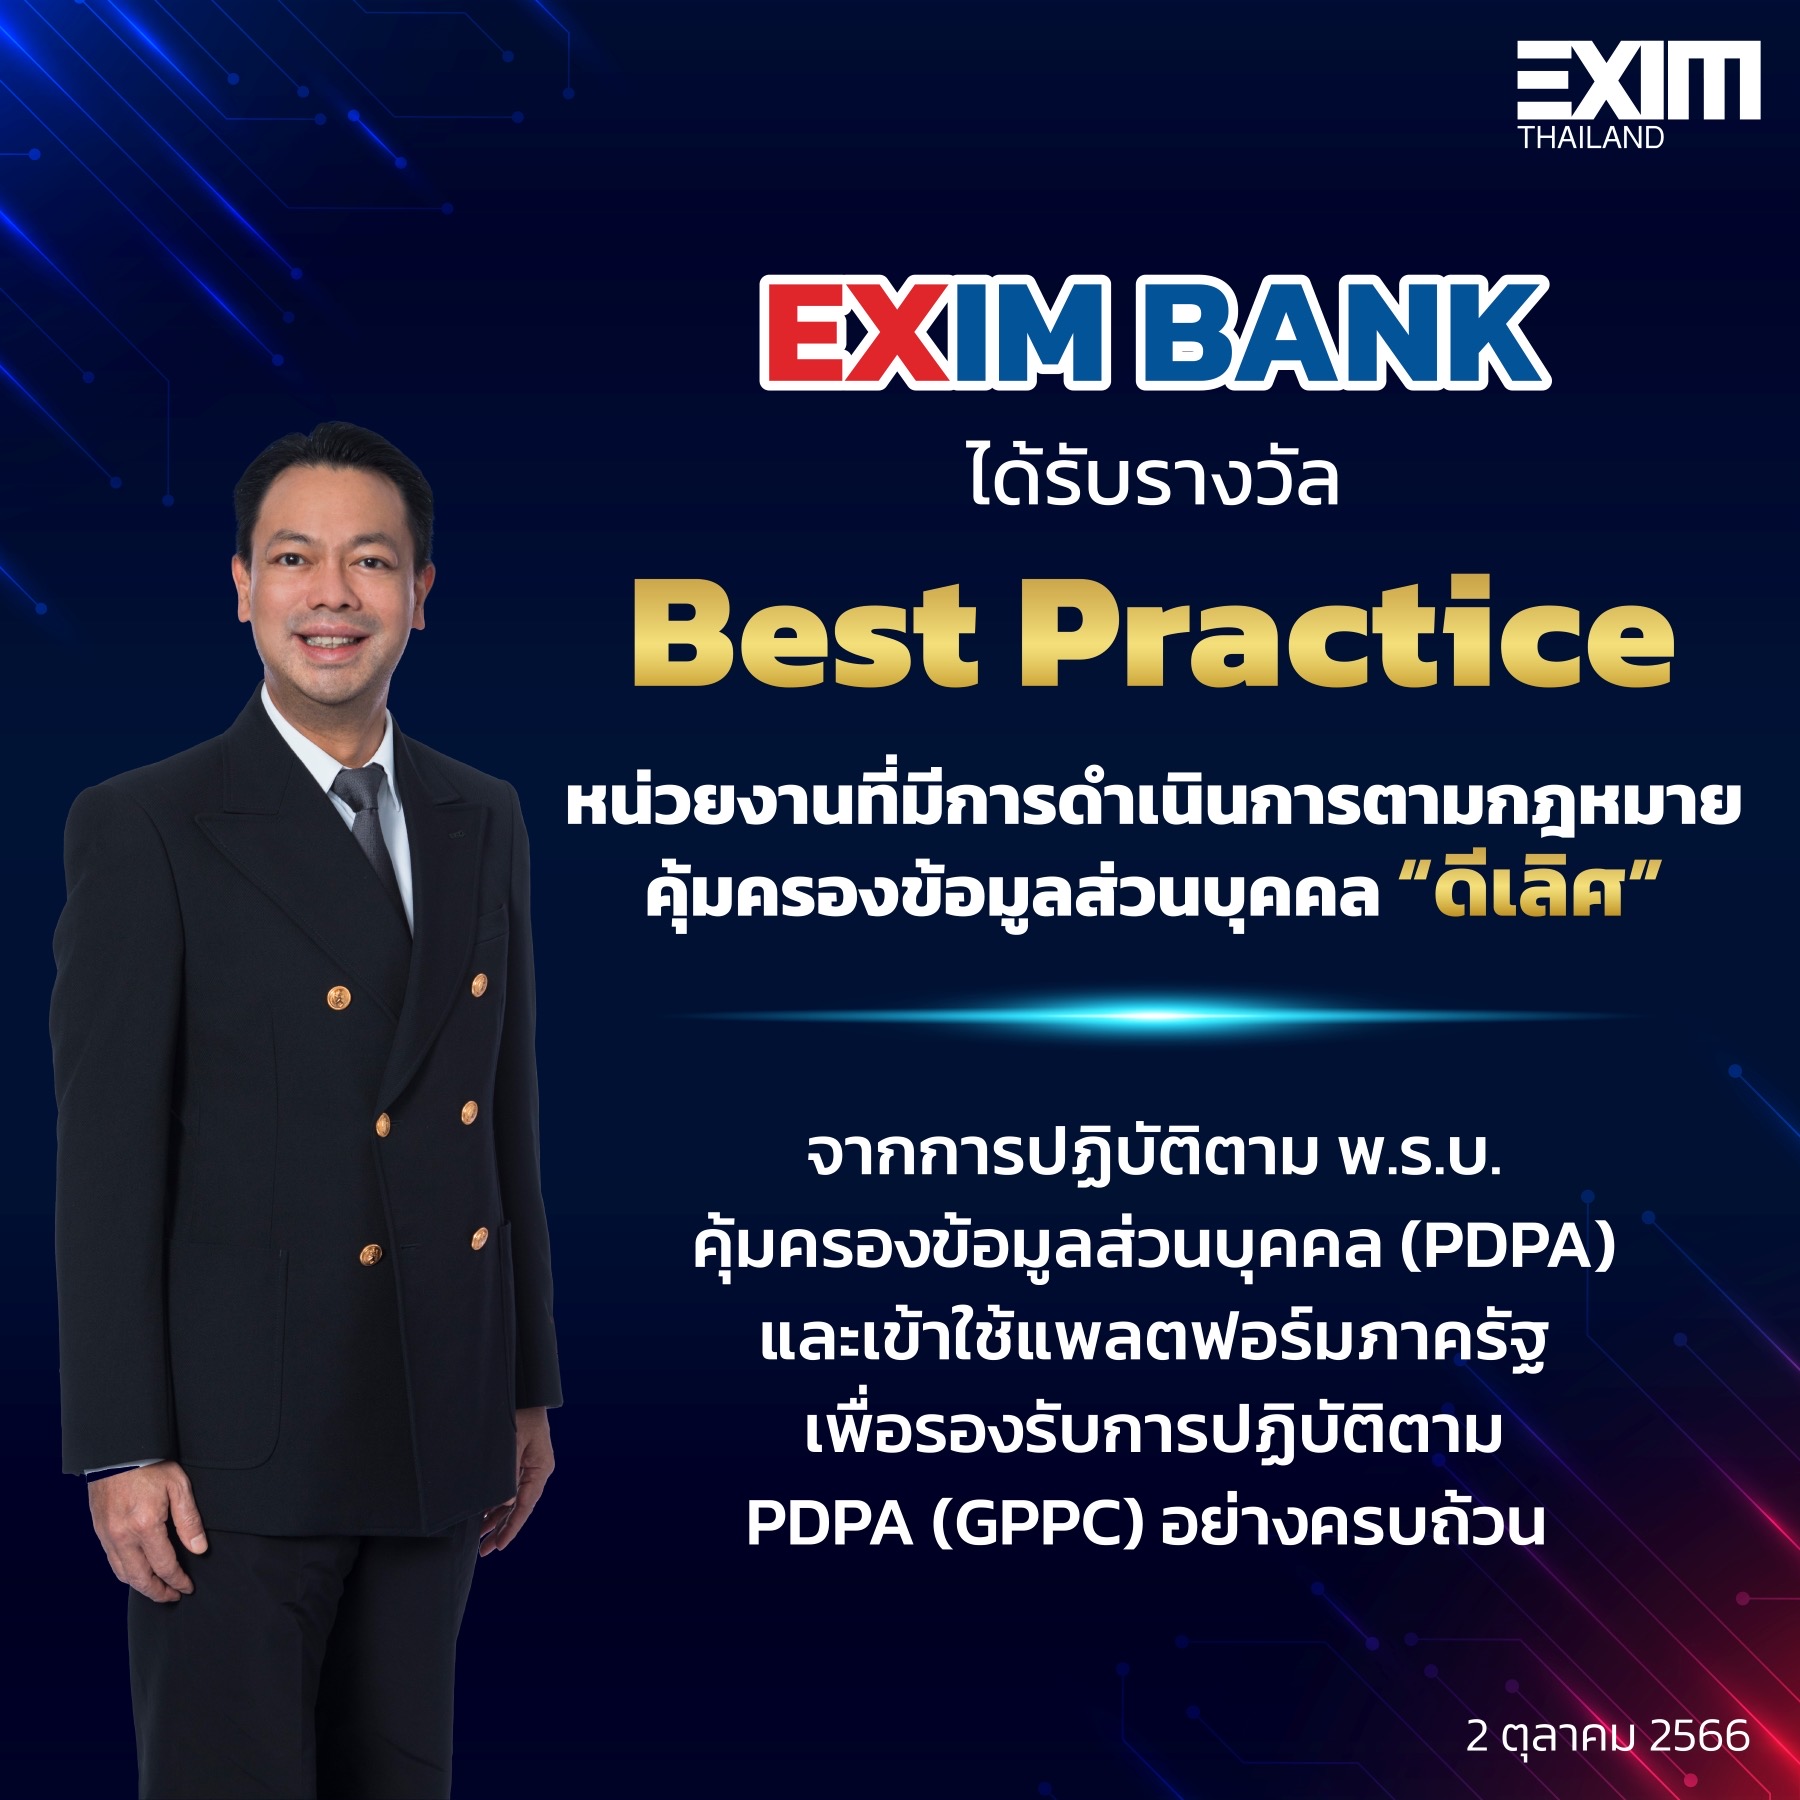 EXIM BANK คว้ารางวัล “Best Practice” หน่วยงานที่มีการดำเนินการตามกฎหมายคุ้มครองข้อมูลส่วนบุคคล “ดีเลิศ”